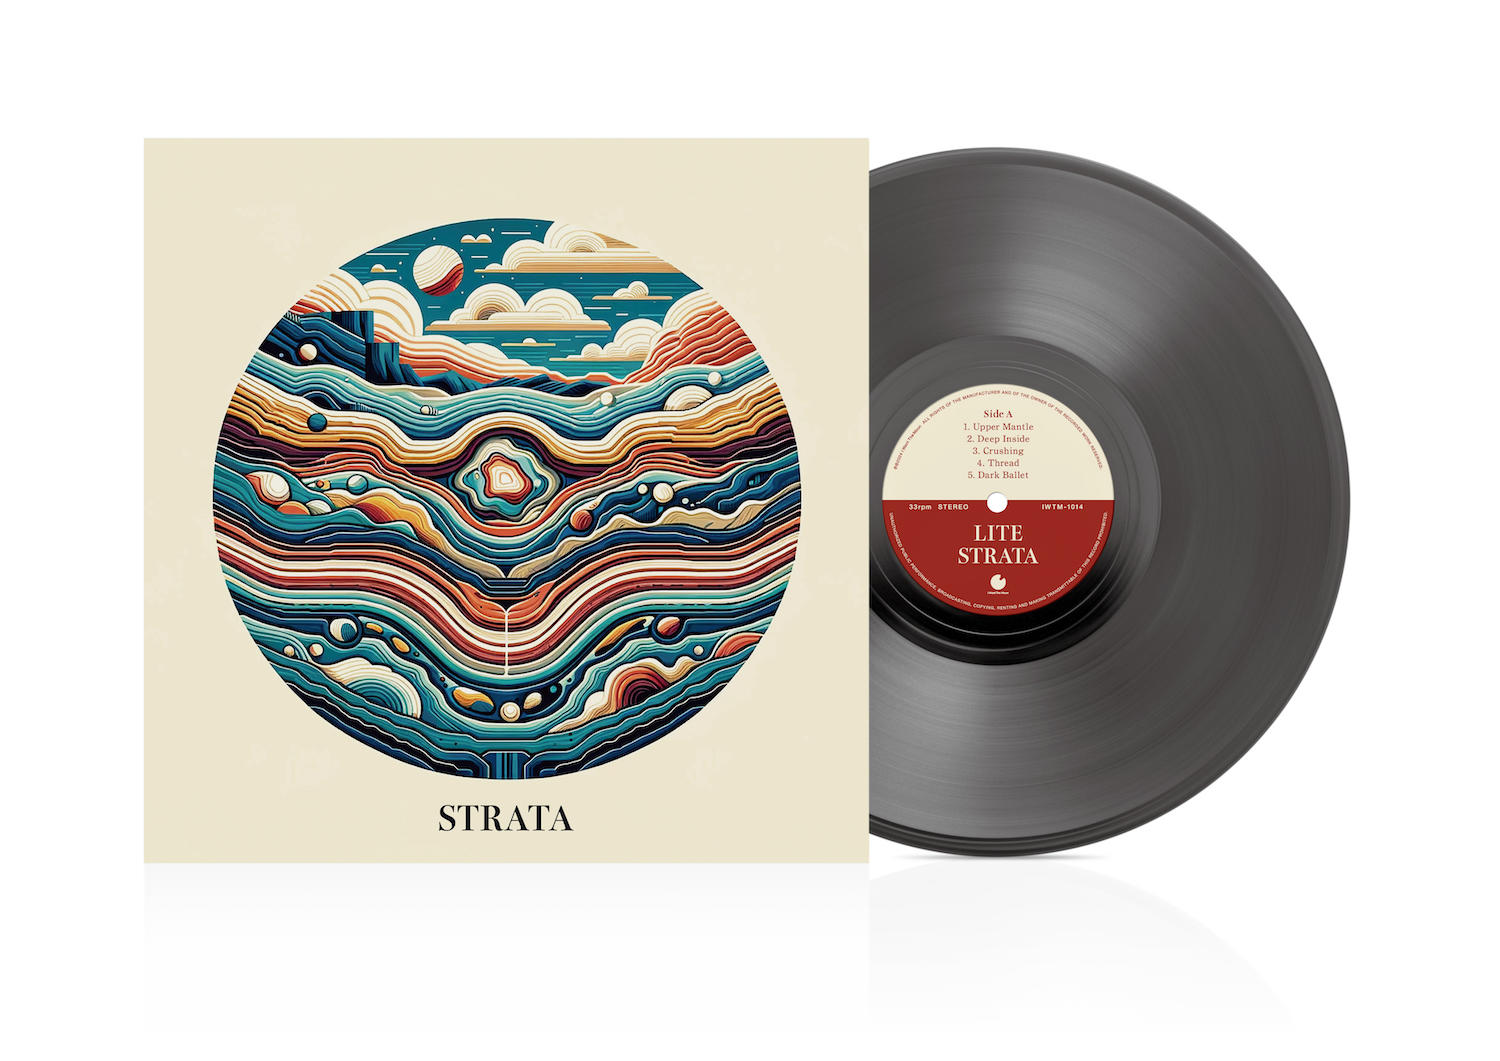 7thアルバム『STRATA』のCD・LPが5月1日(水)に発売決定しました。